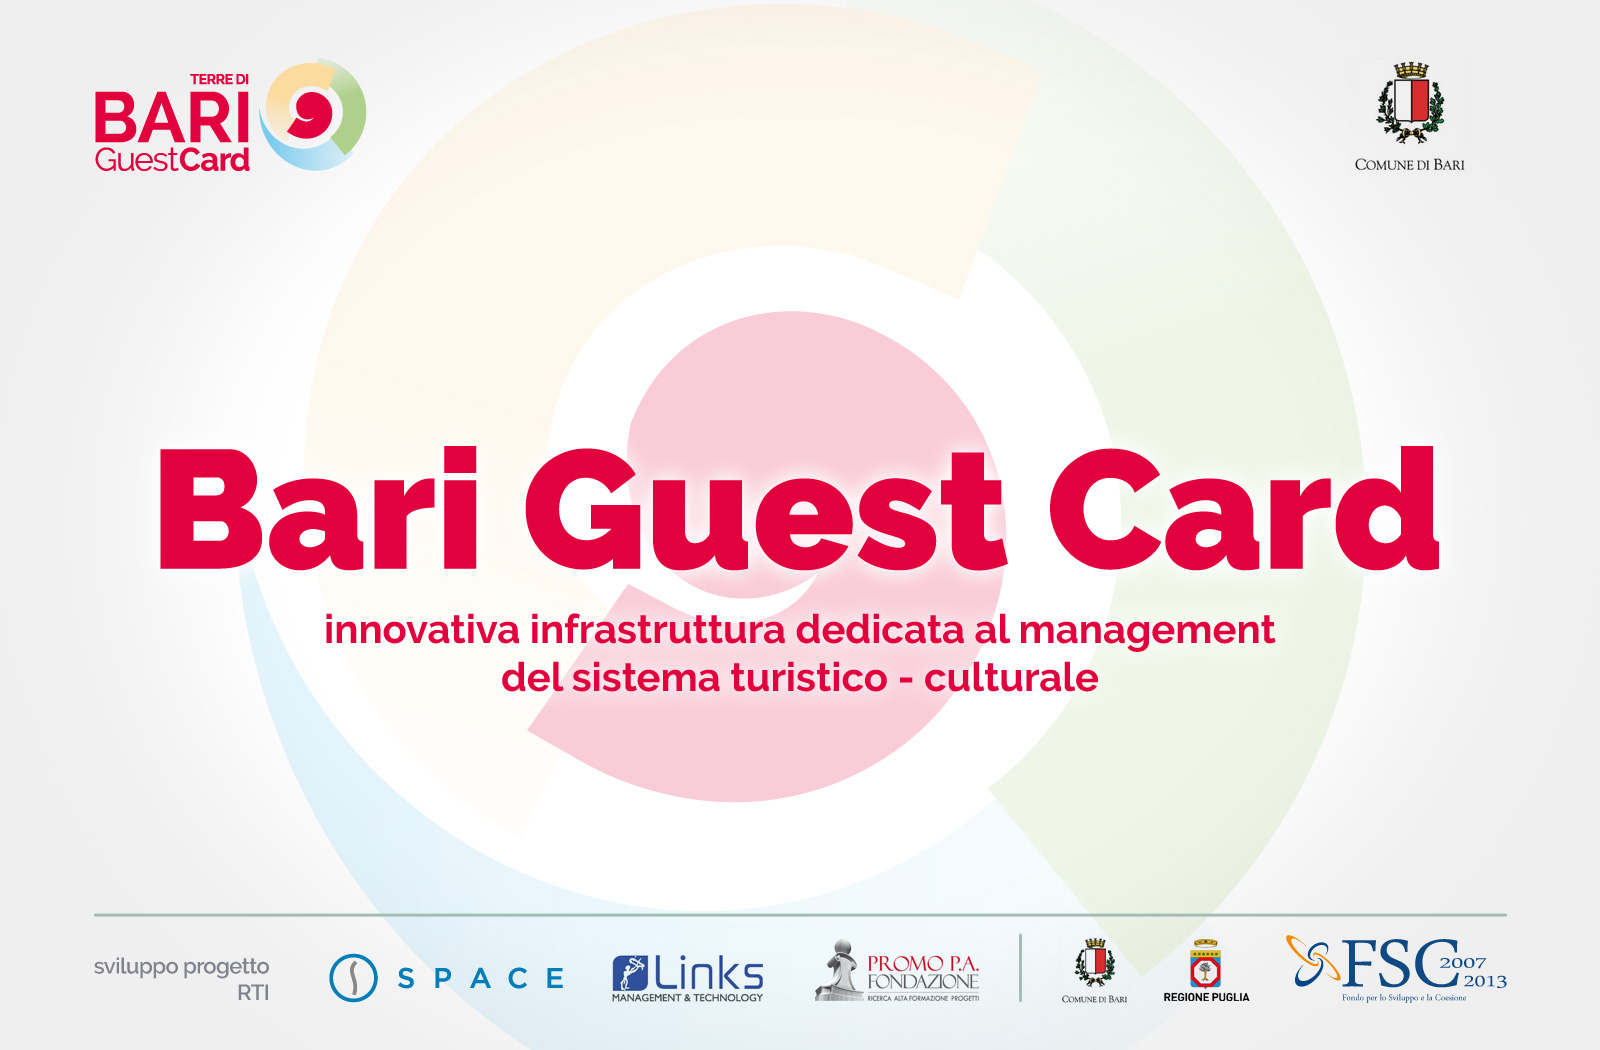 Terre di Bari Guest Card, al via il bando per la gestione delle card